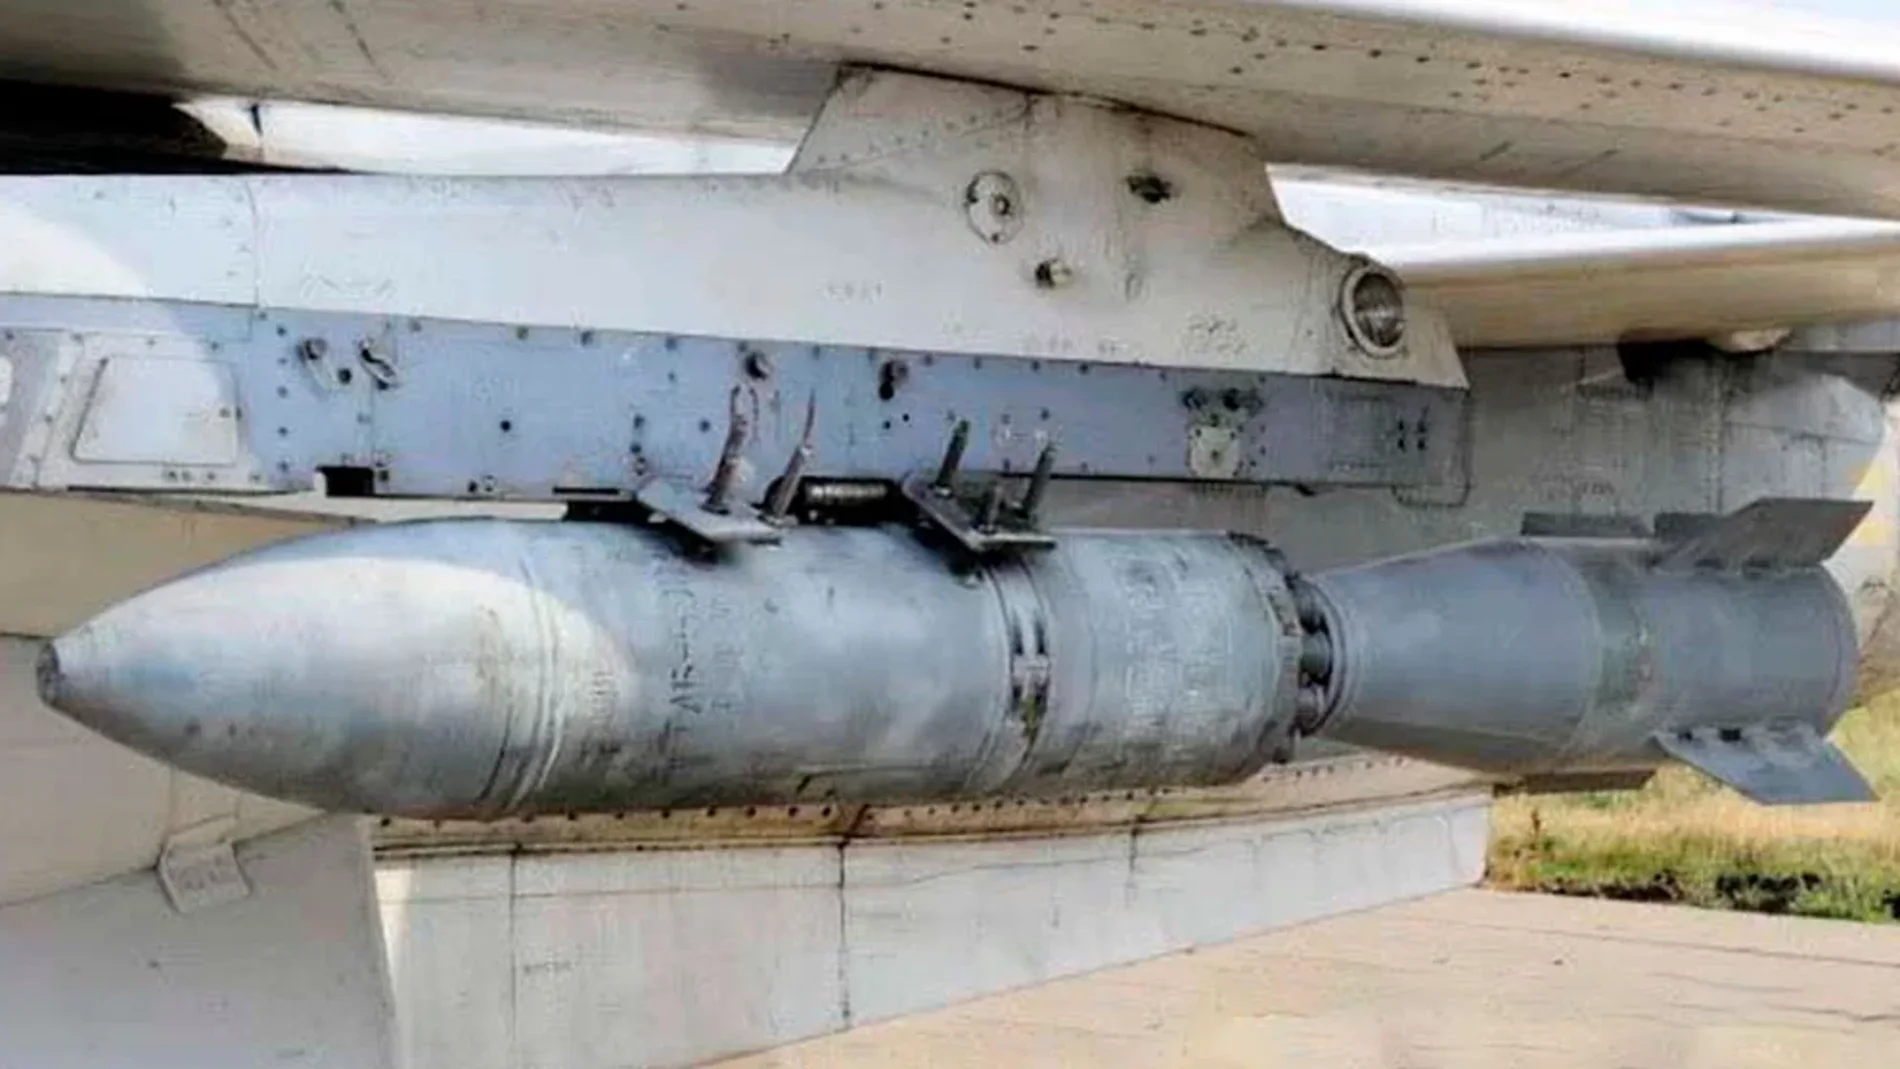 bomba BETAB-500 ShP de Rusia